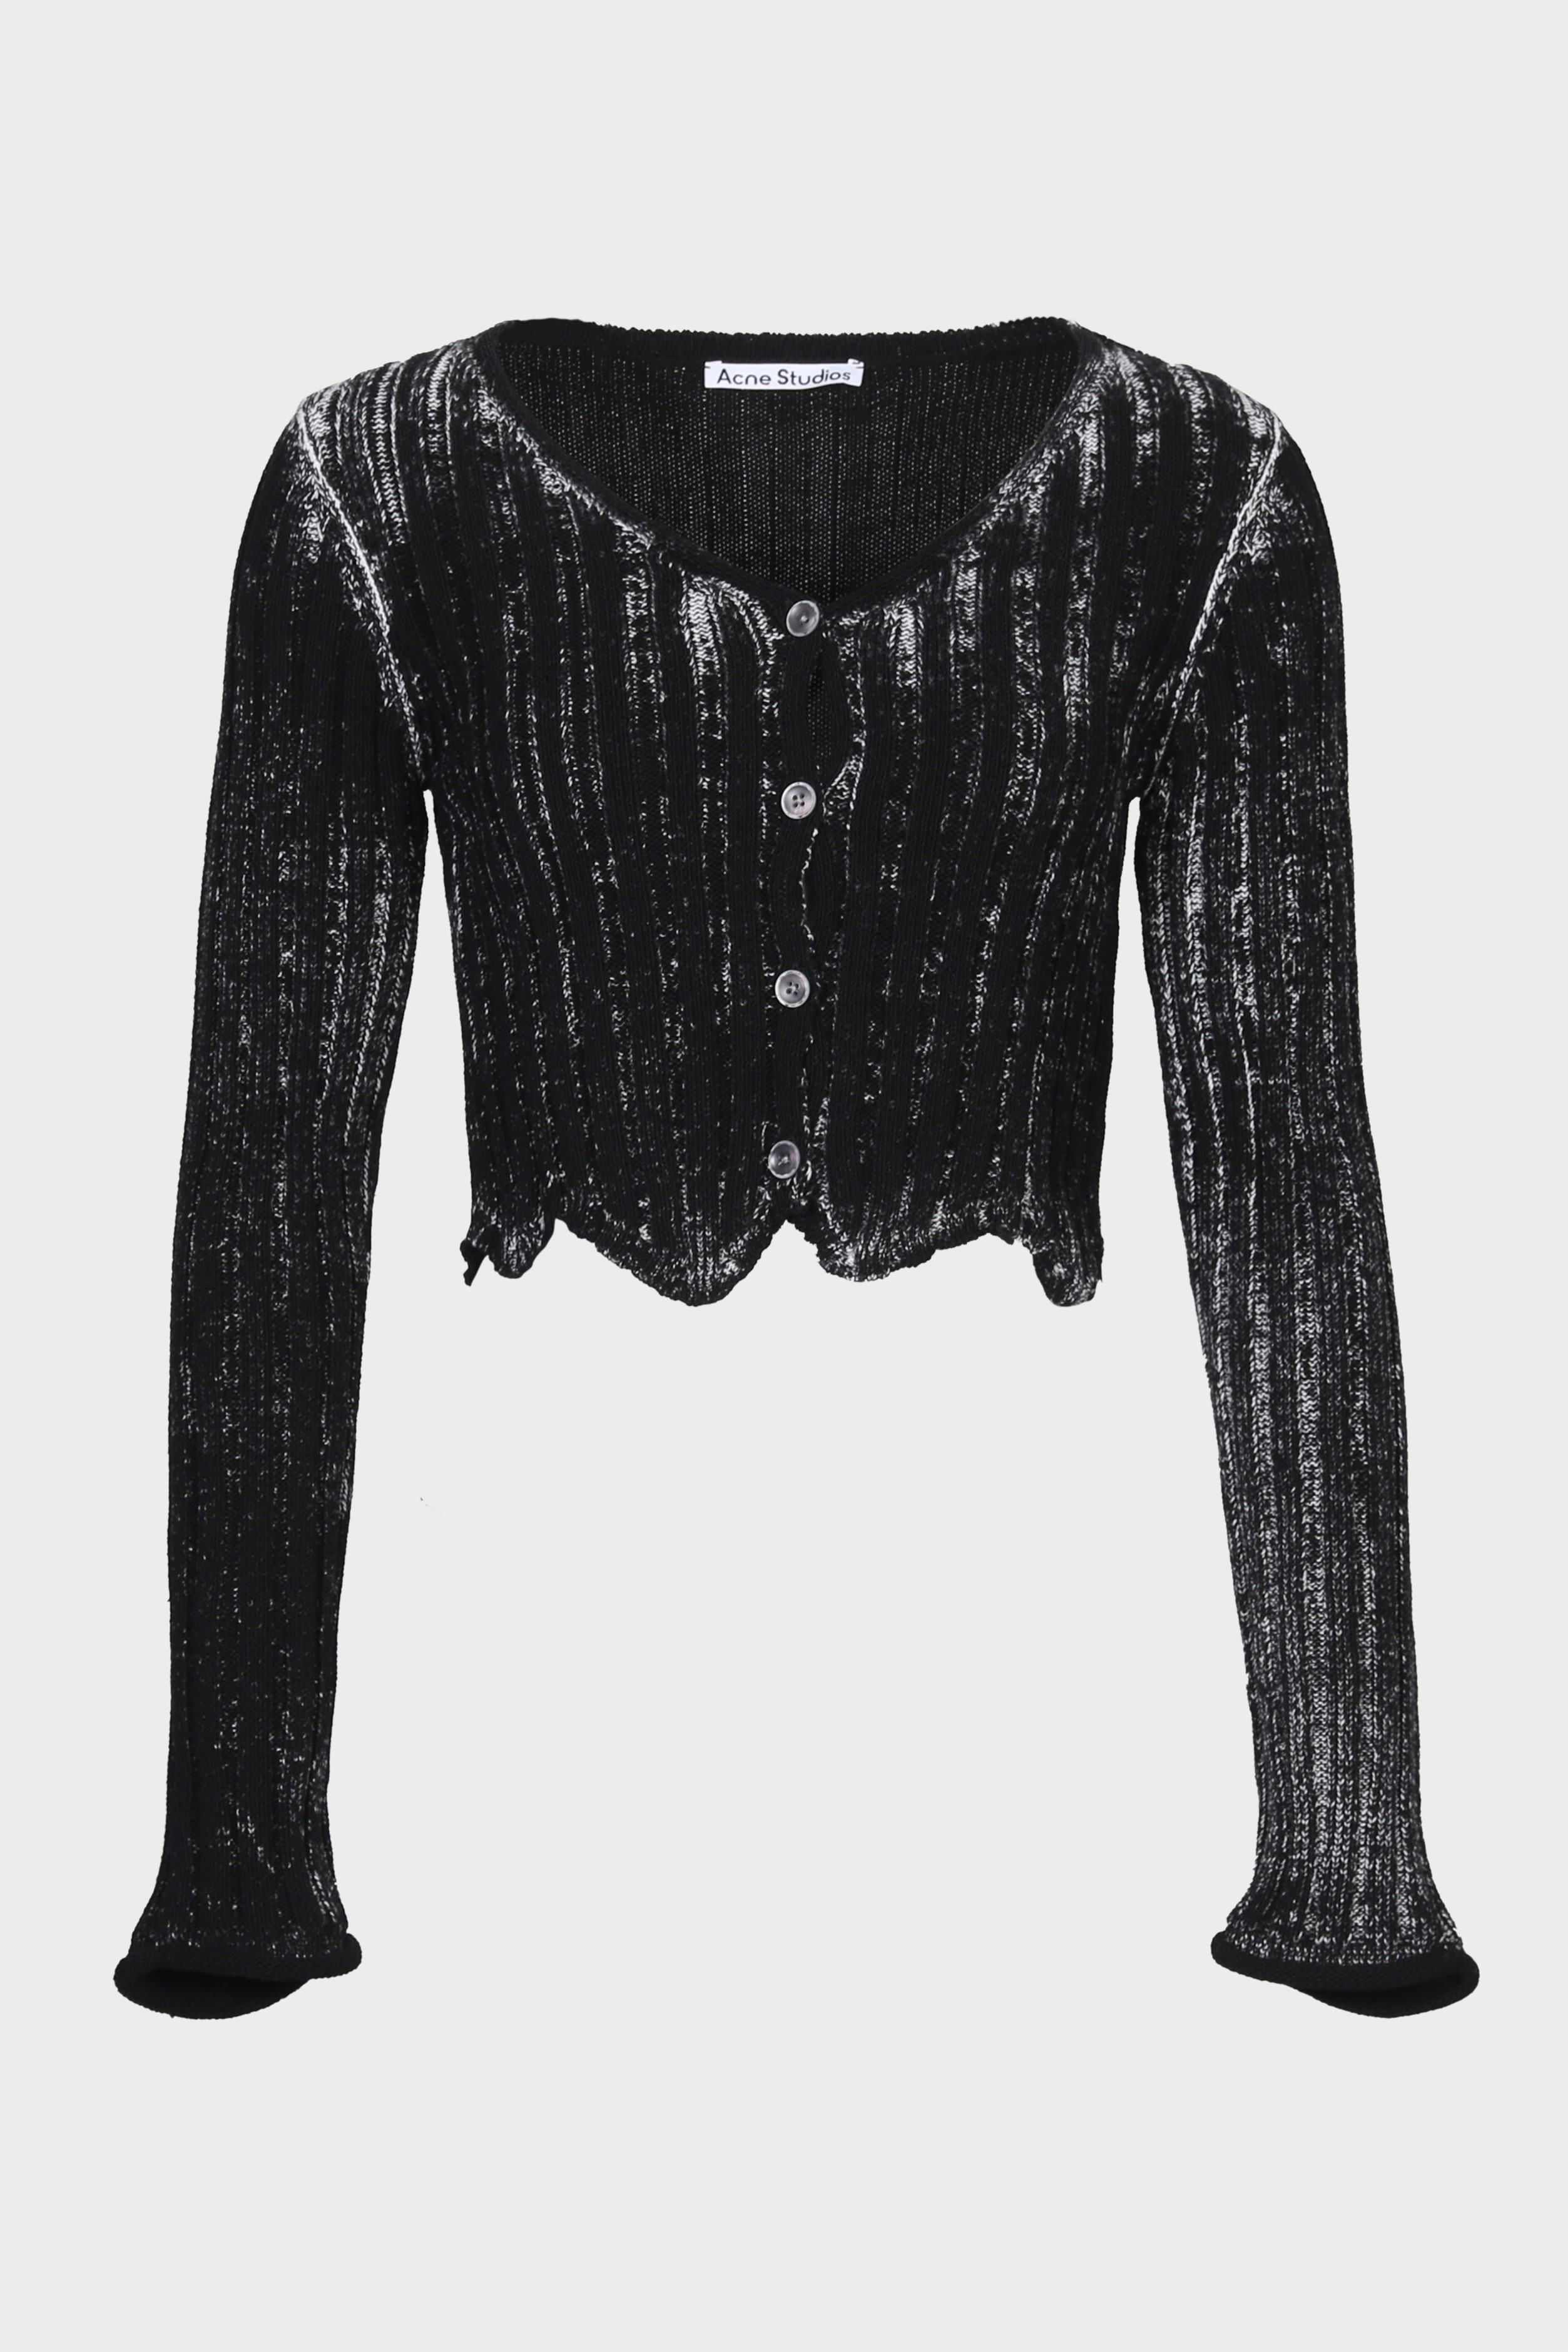 ACNE STUDIOS Knit Cardigan in Black/White S